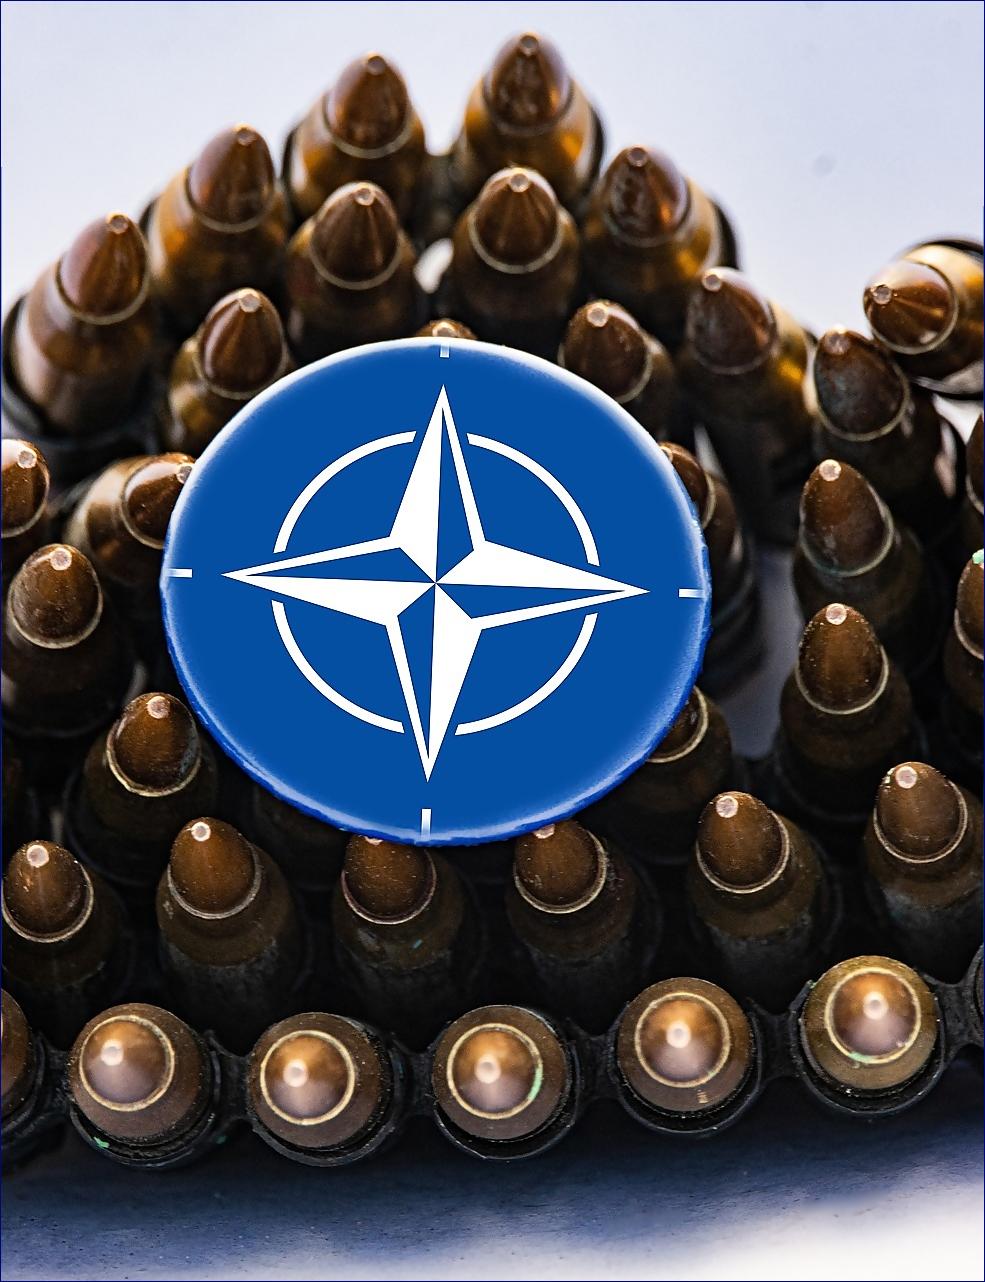 Vícero zemí dosáhne cíle NATO ve výši 2 % výdajů na obranu